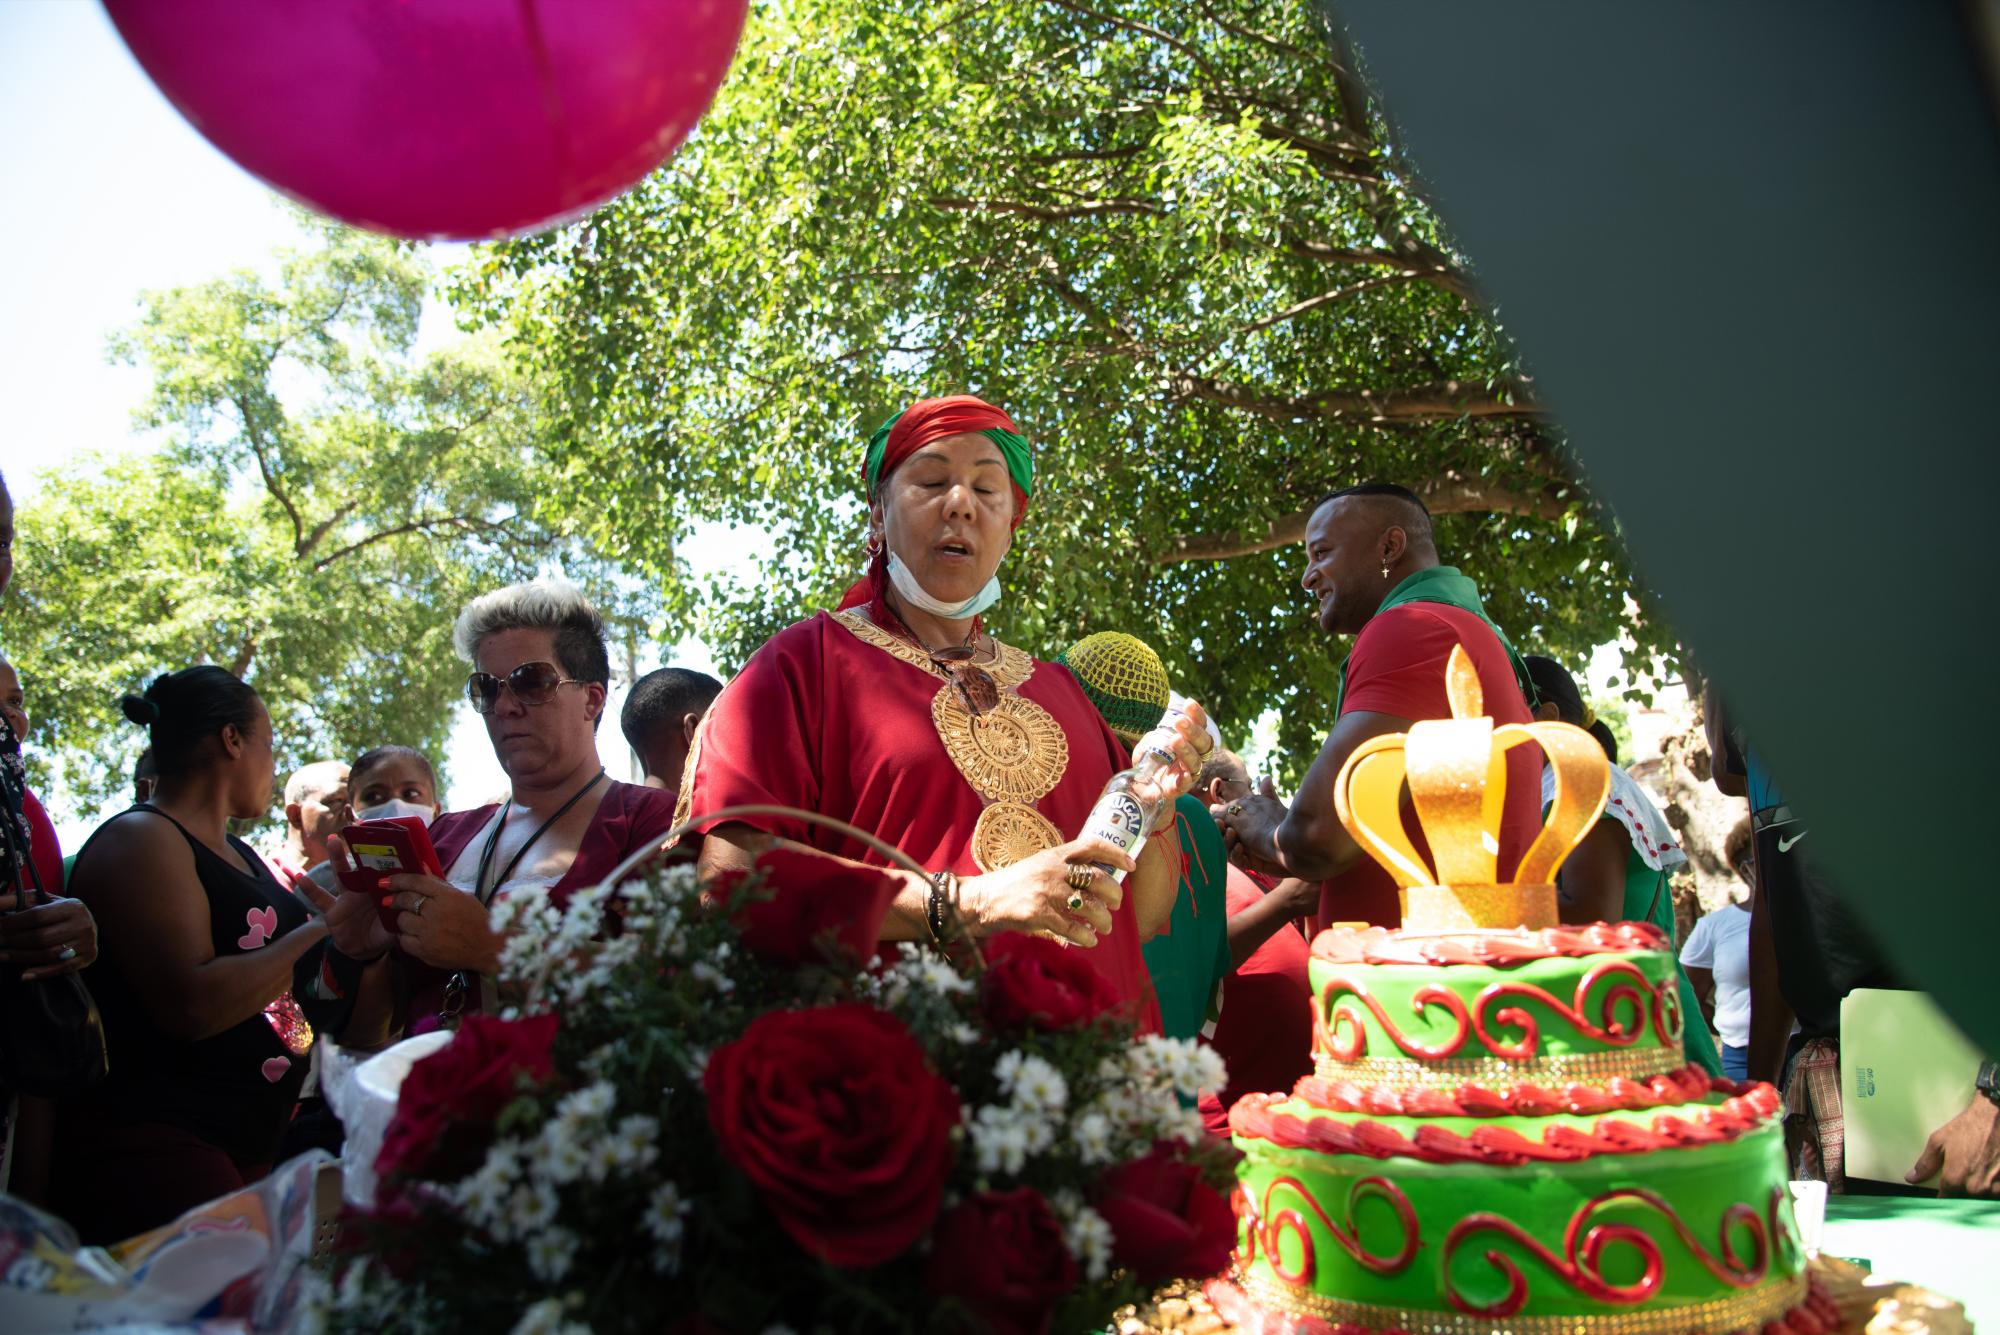 Compartir un bizcocho es una de las tradiciones que acompaña la celebración en honor a Belié Belcán (Foto: Dania Acevedo / Diario Libre)